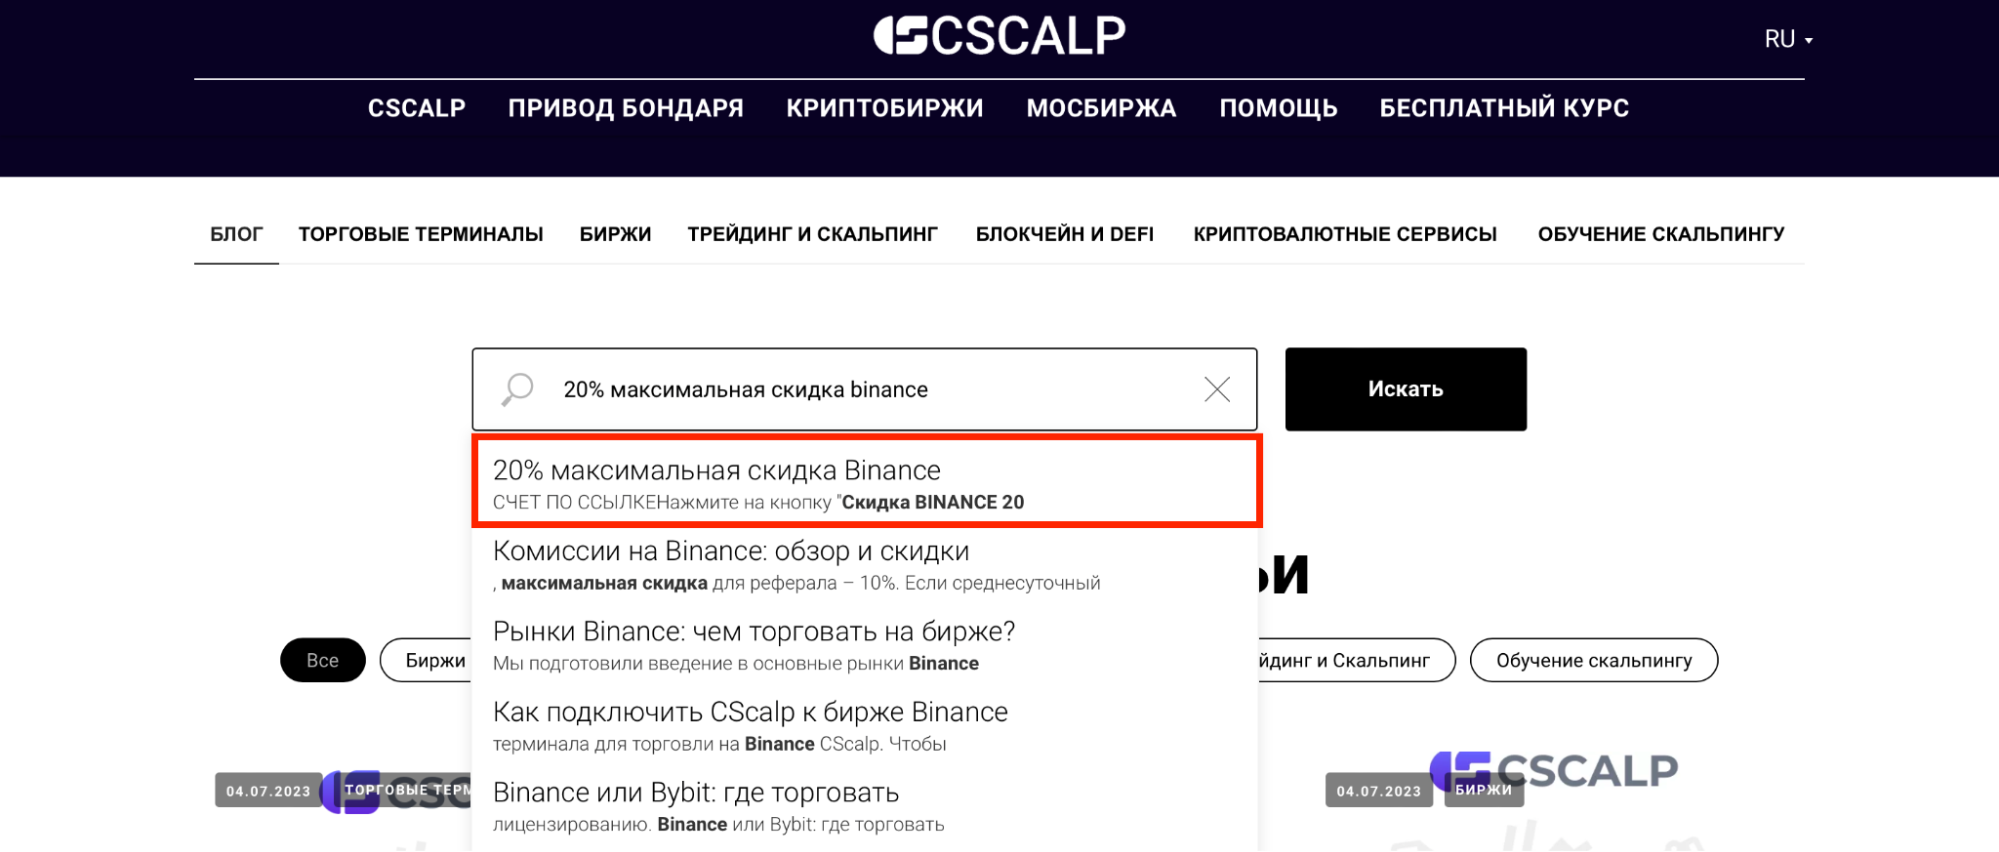 официальный сайт CScalp, блог CScalp